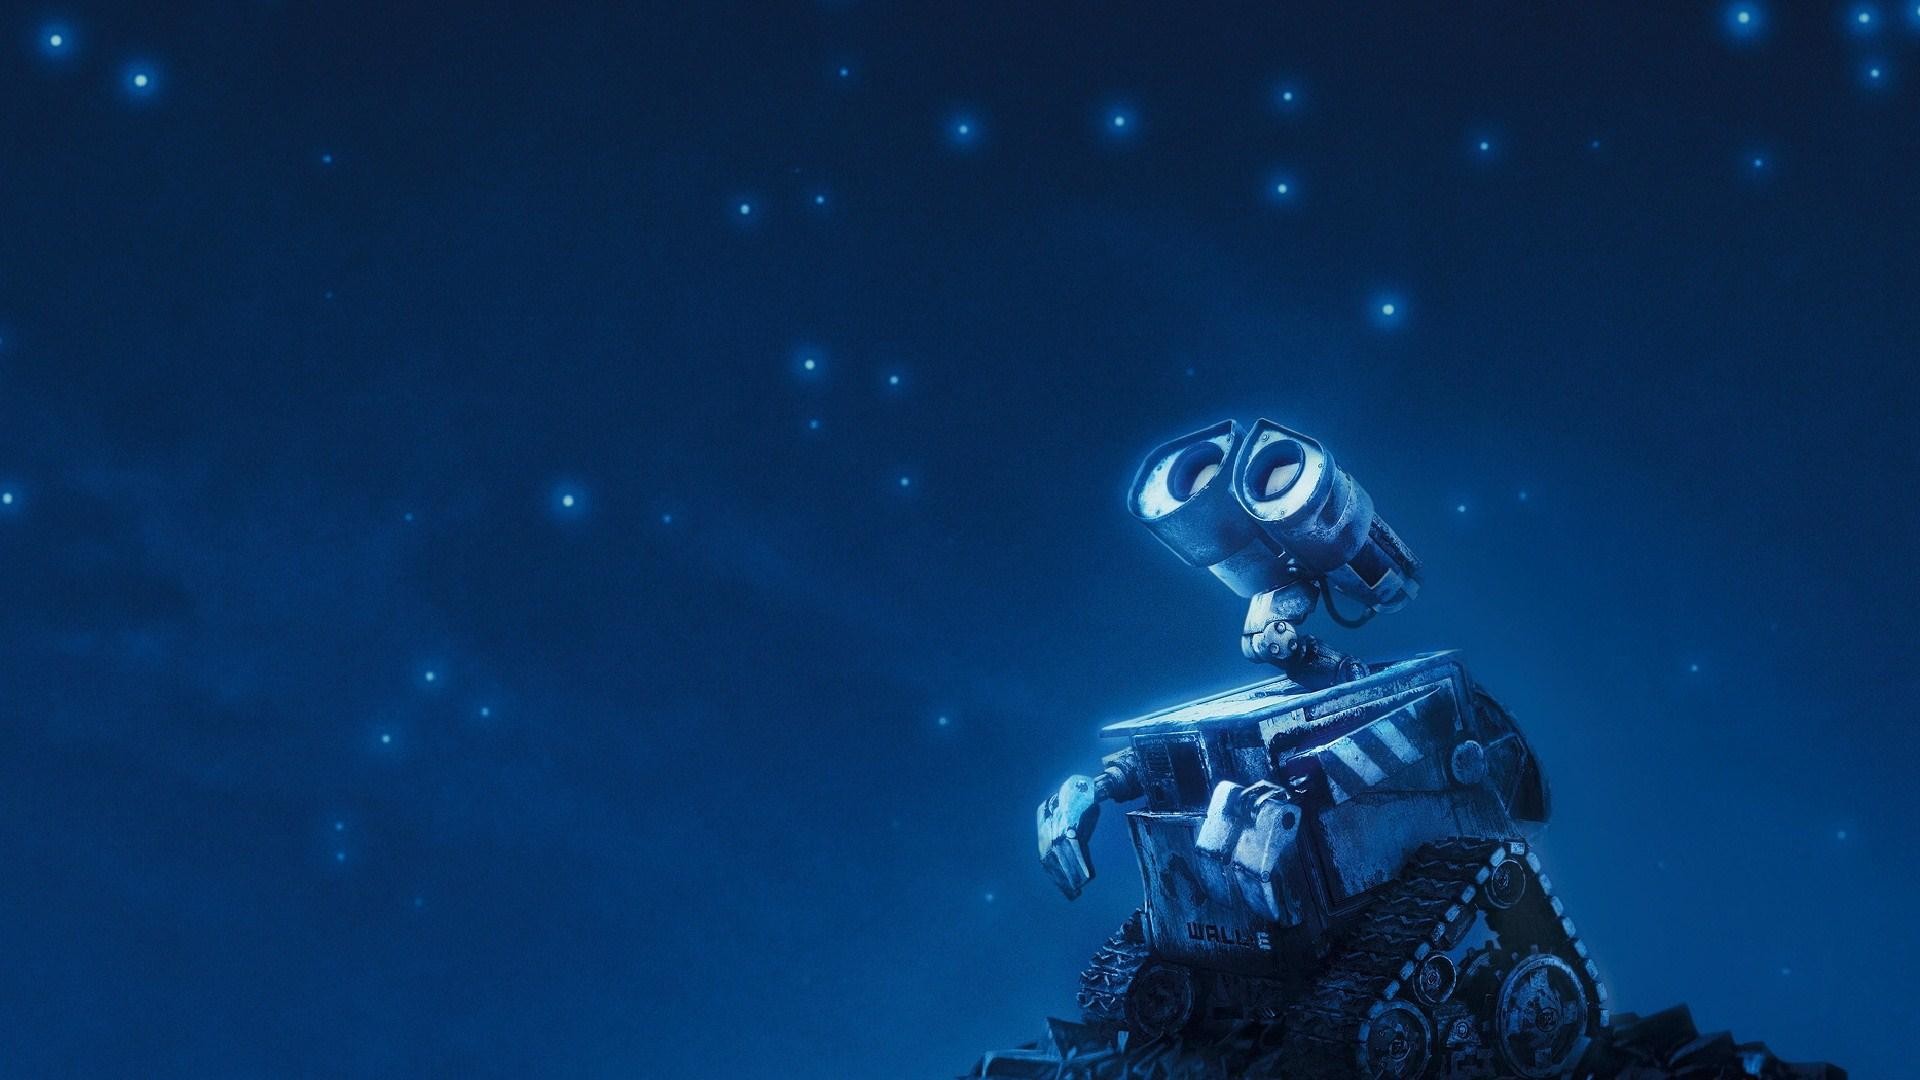 1920x1080 Wall-E Robot Night Stars Sky Animated Cartoon